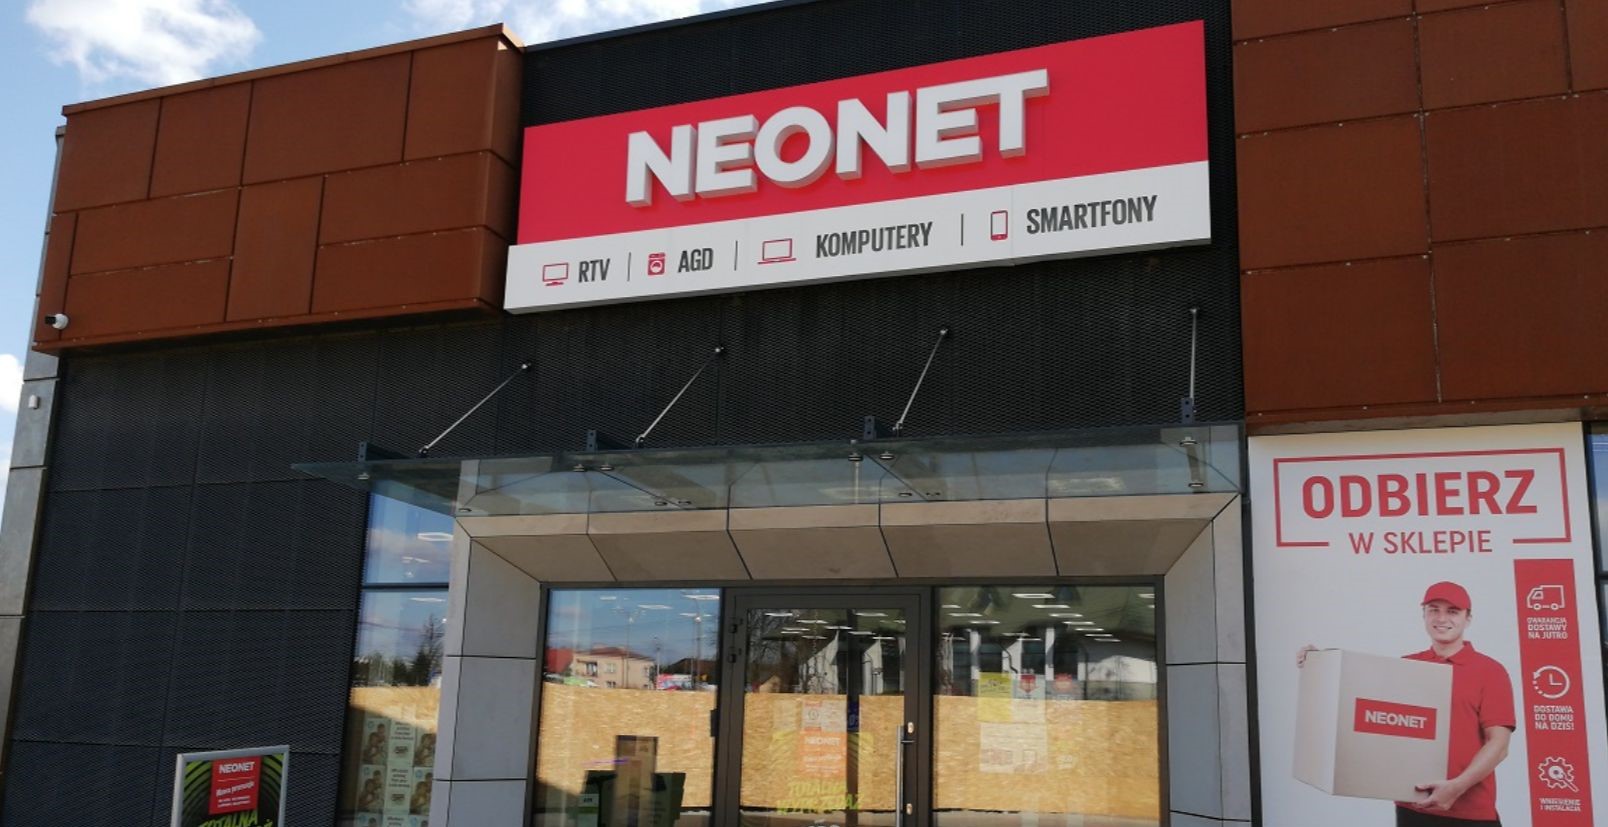 Wejście do sklepu NEONET z witrynami i reklamami, na których widać sprzęt RTV, AGD, komputery i smartfony.